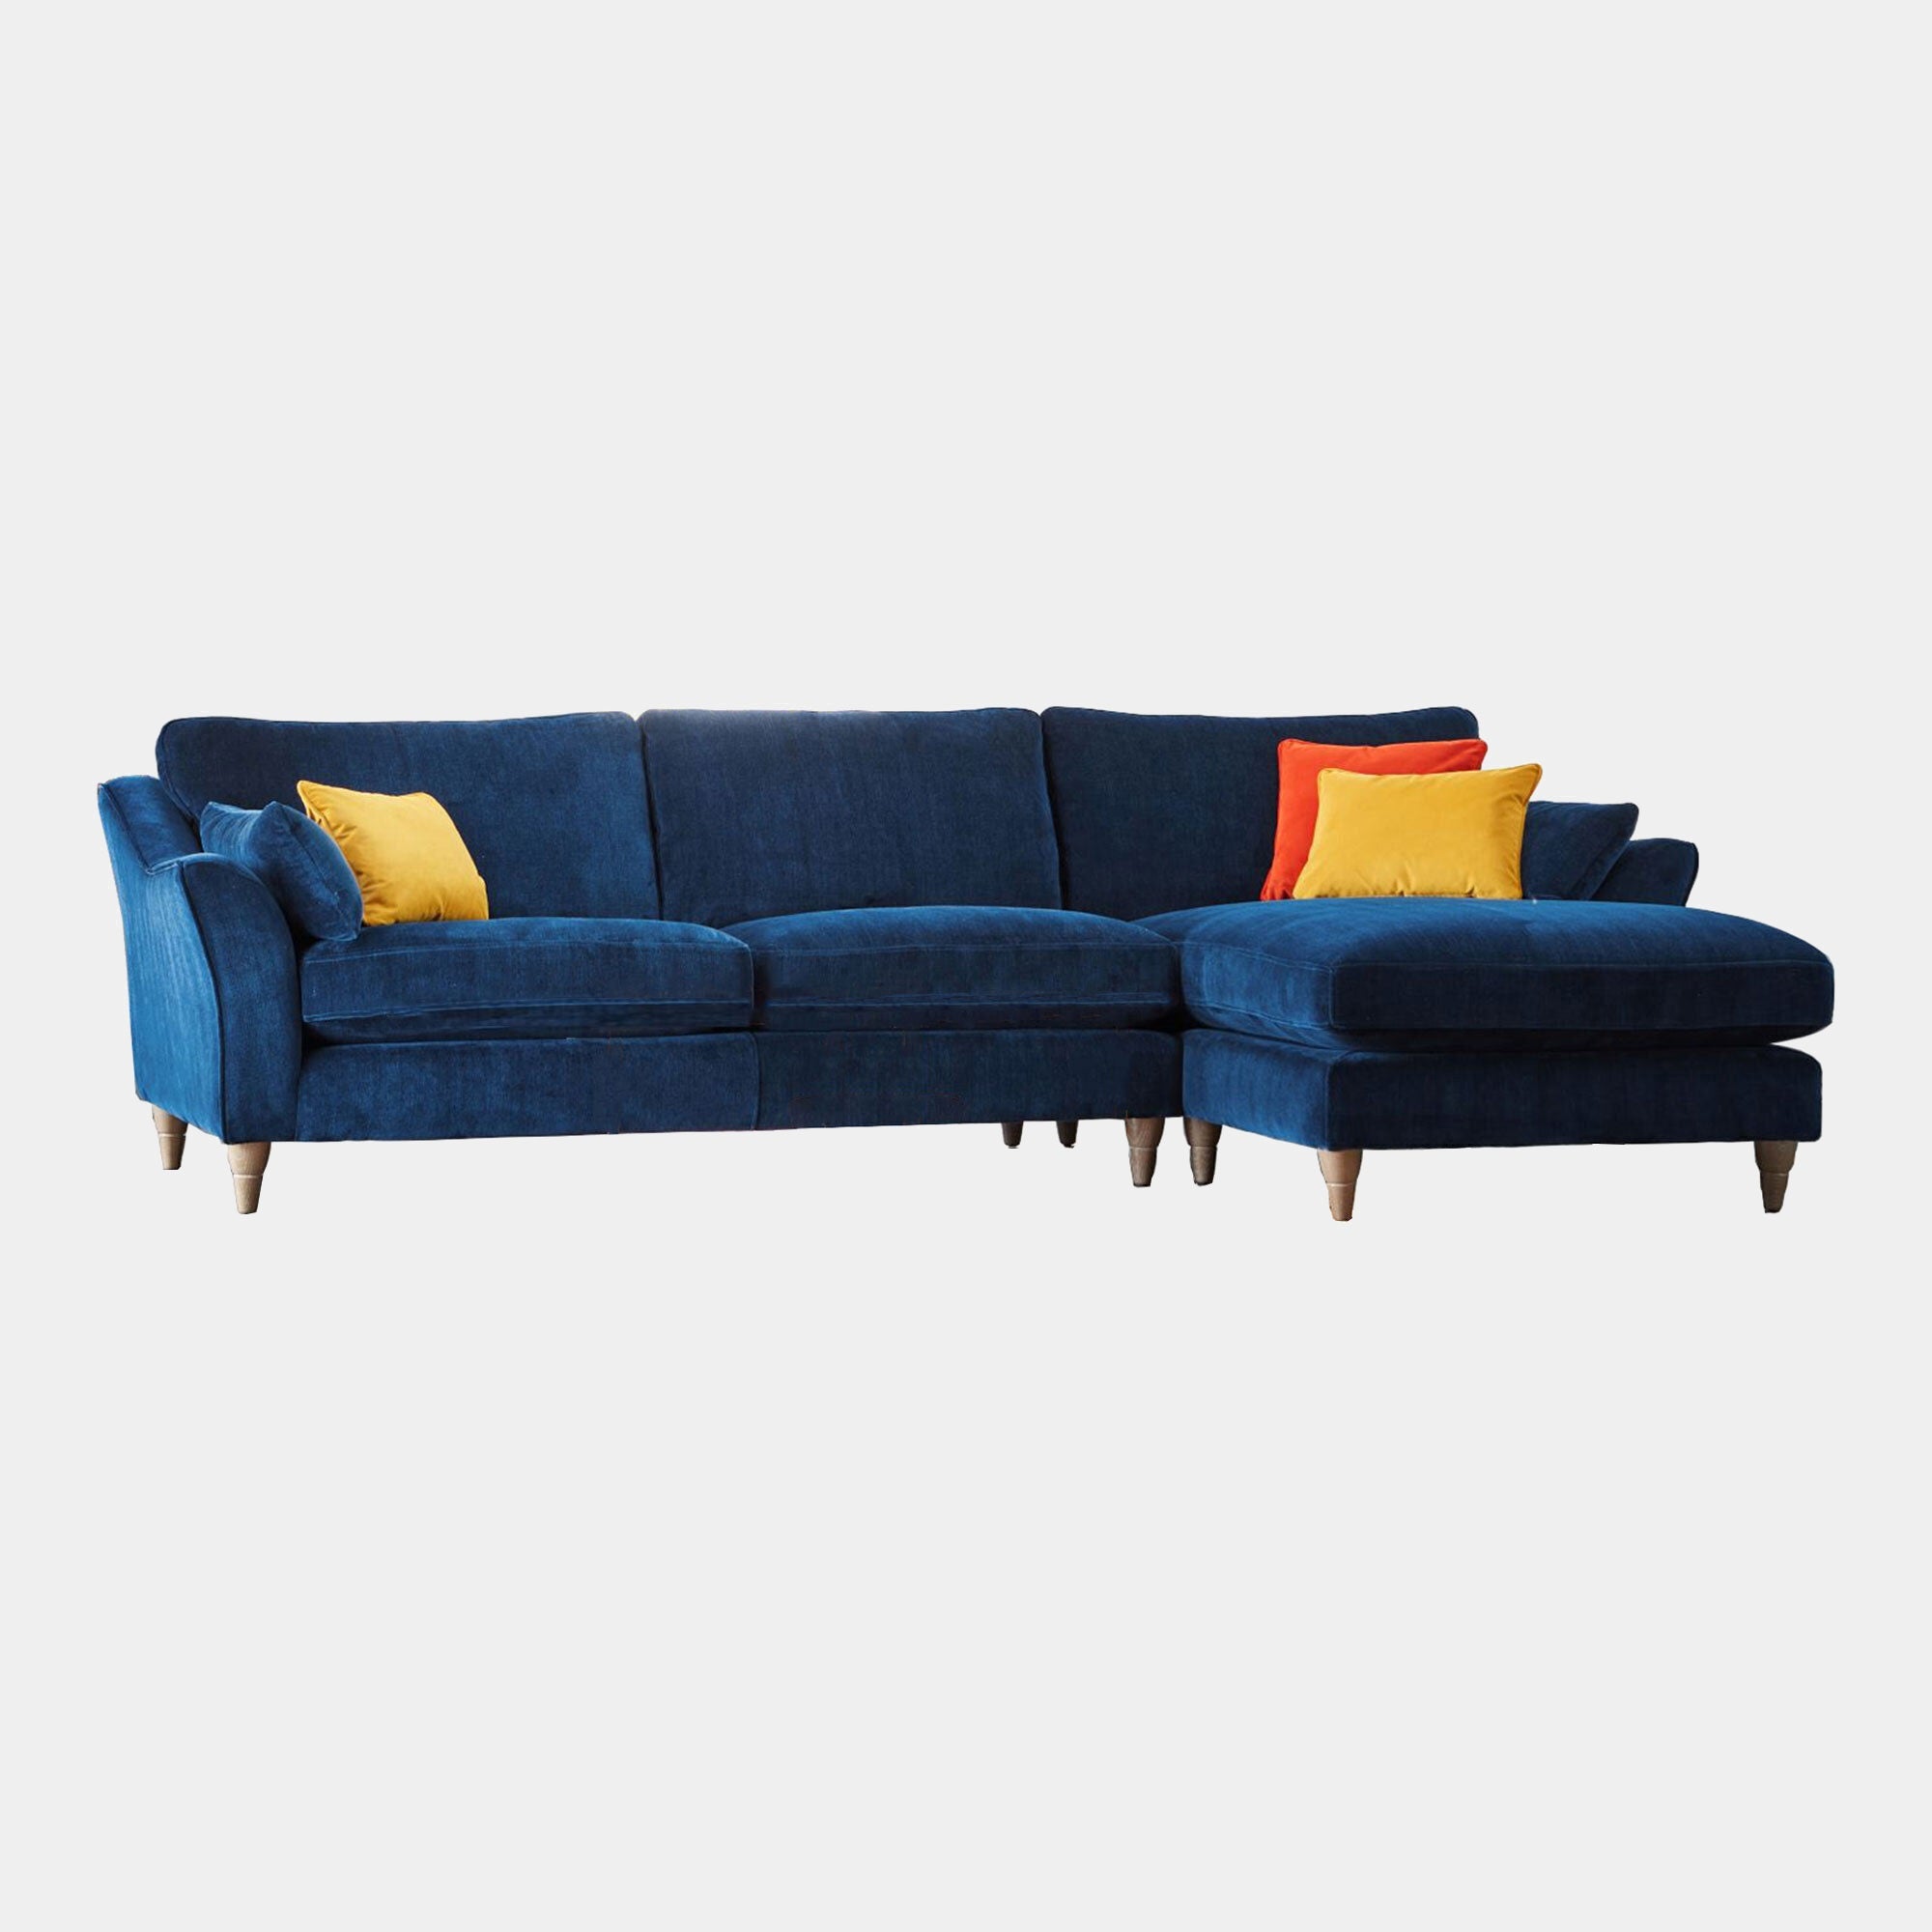 Oscar - RHF Chaise Sofa In Fabric Manhattan